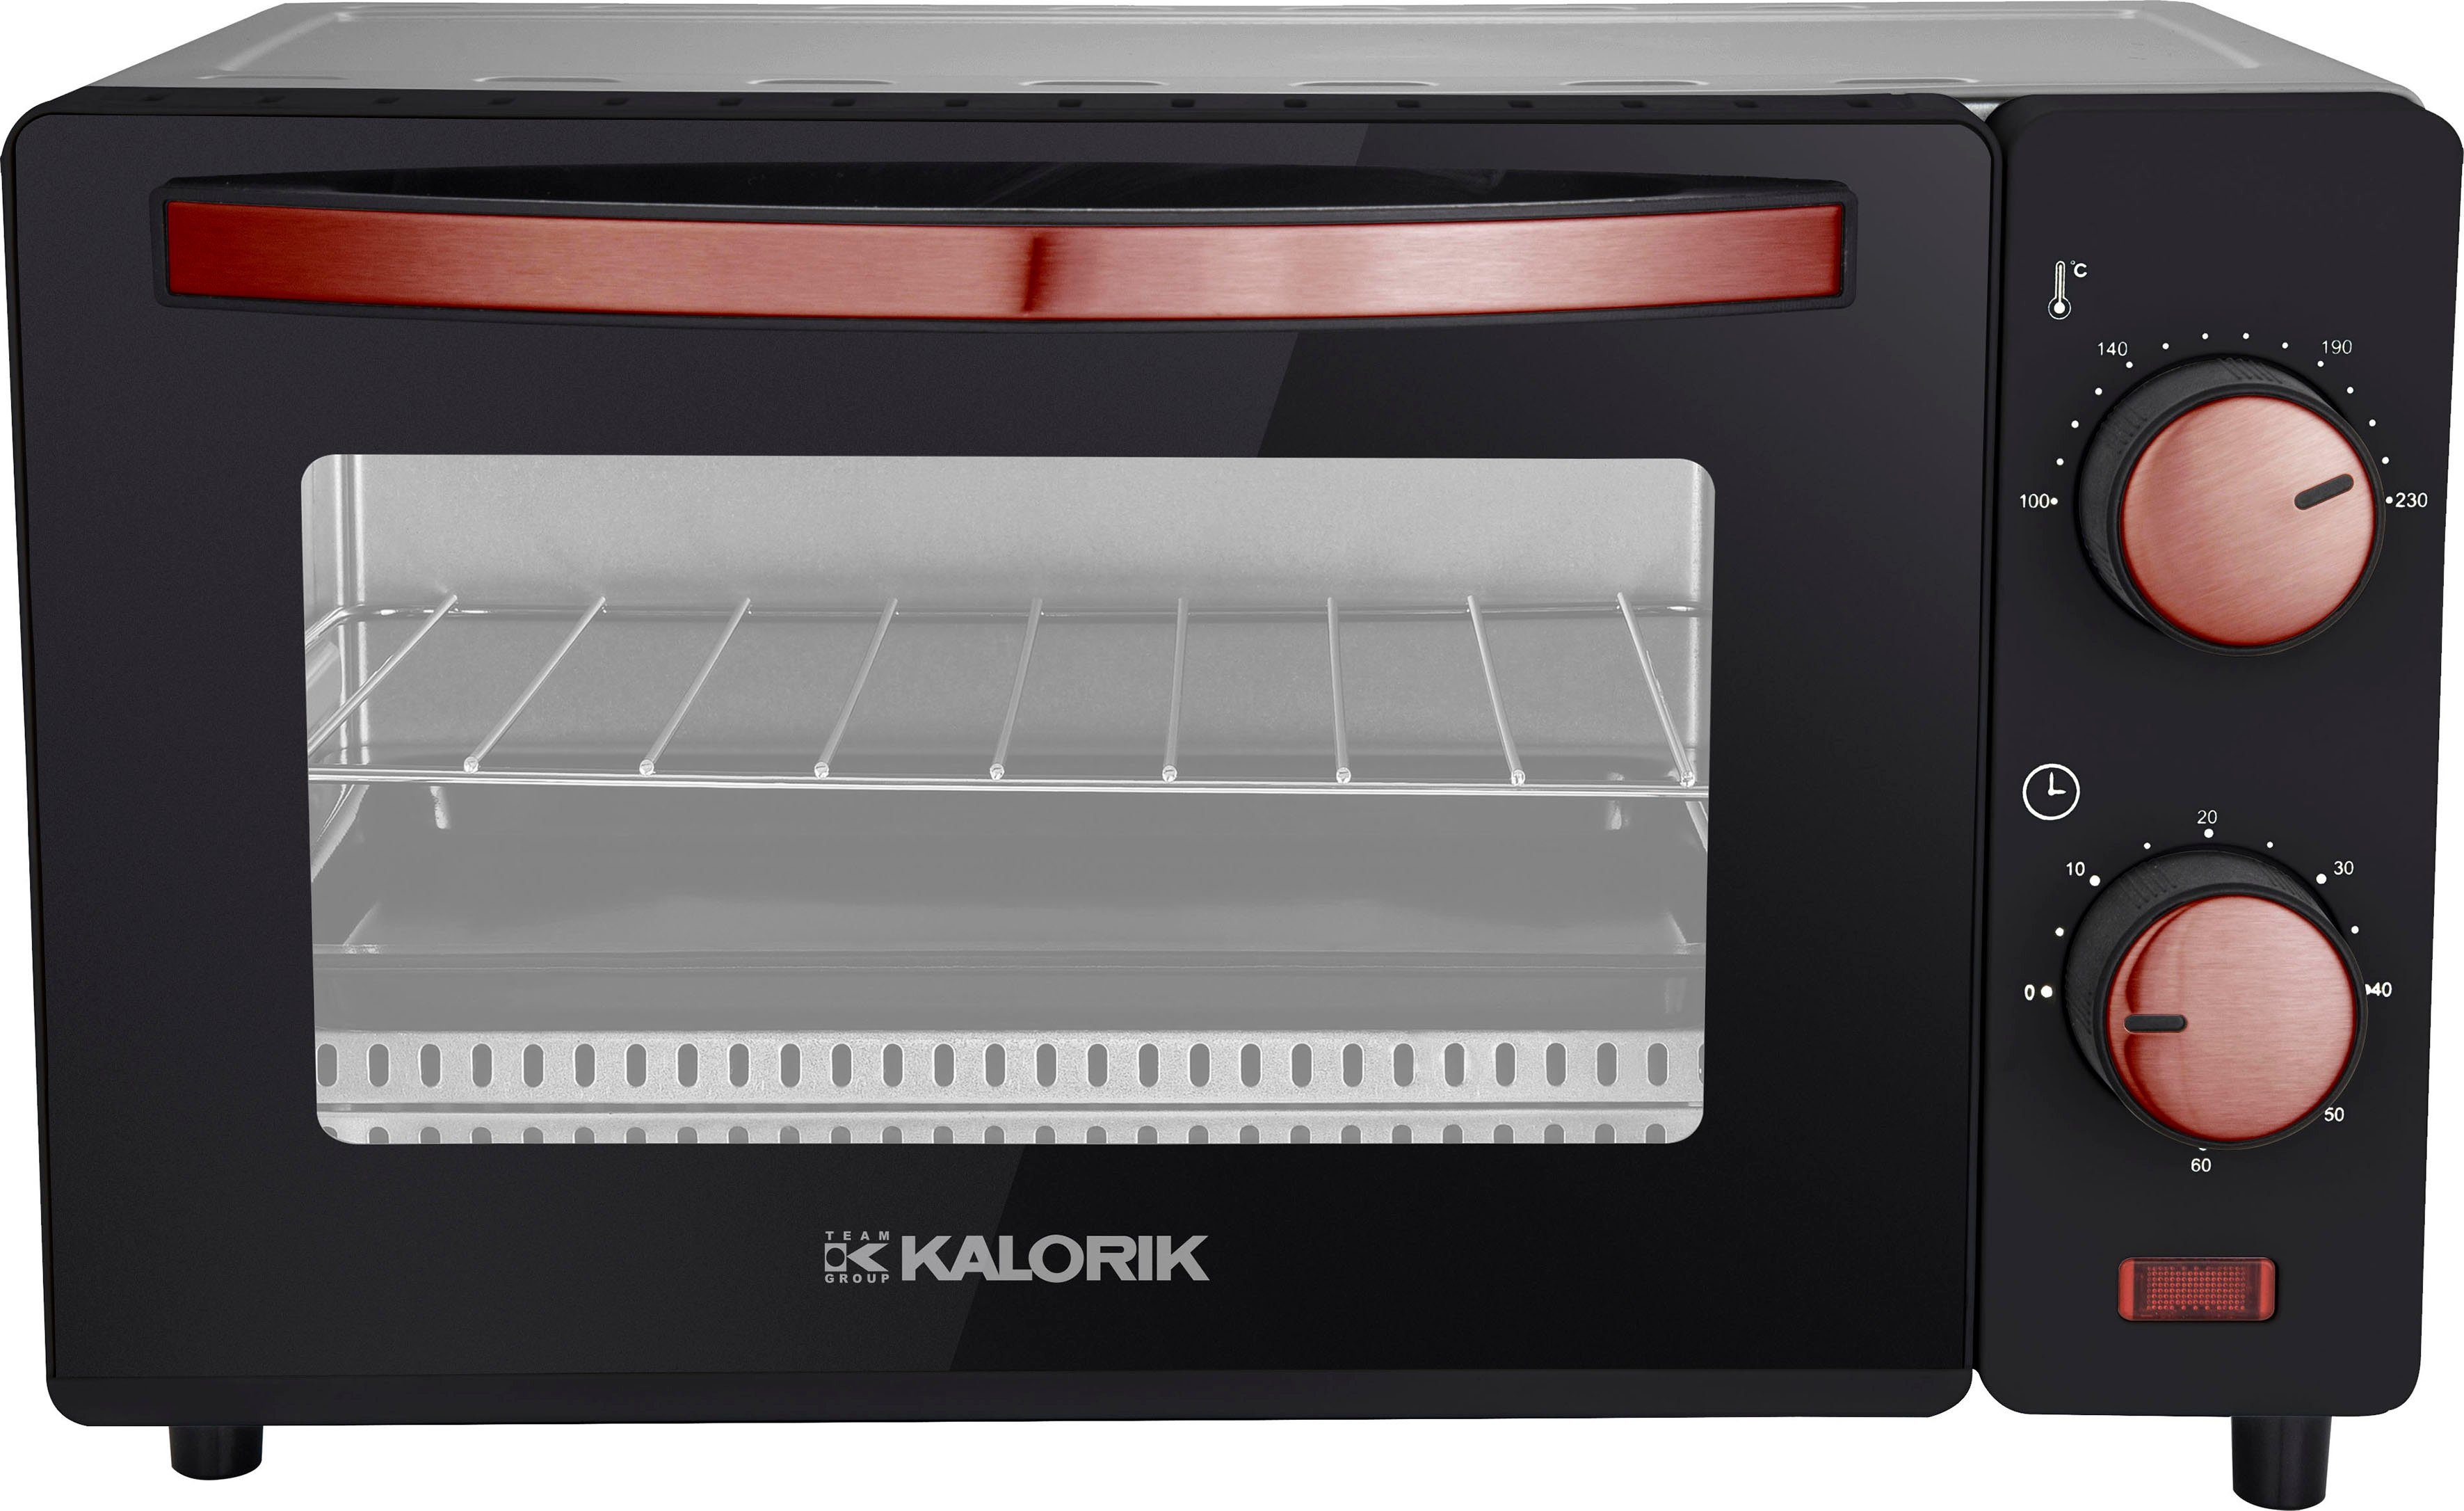 mit Minibackofen Zeitschaltuhr Kitchen Kalorik Originals CO, Team Kalorik by OT Endsignal 2021 TKG